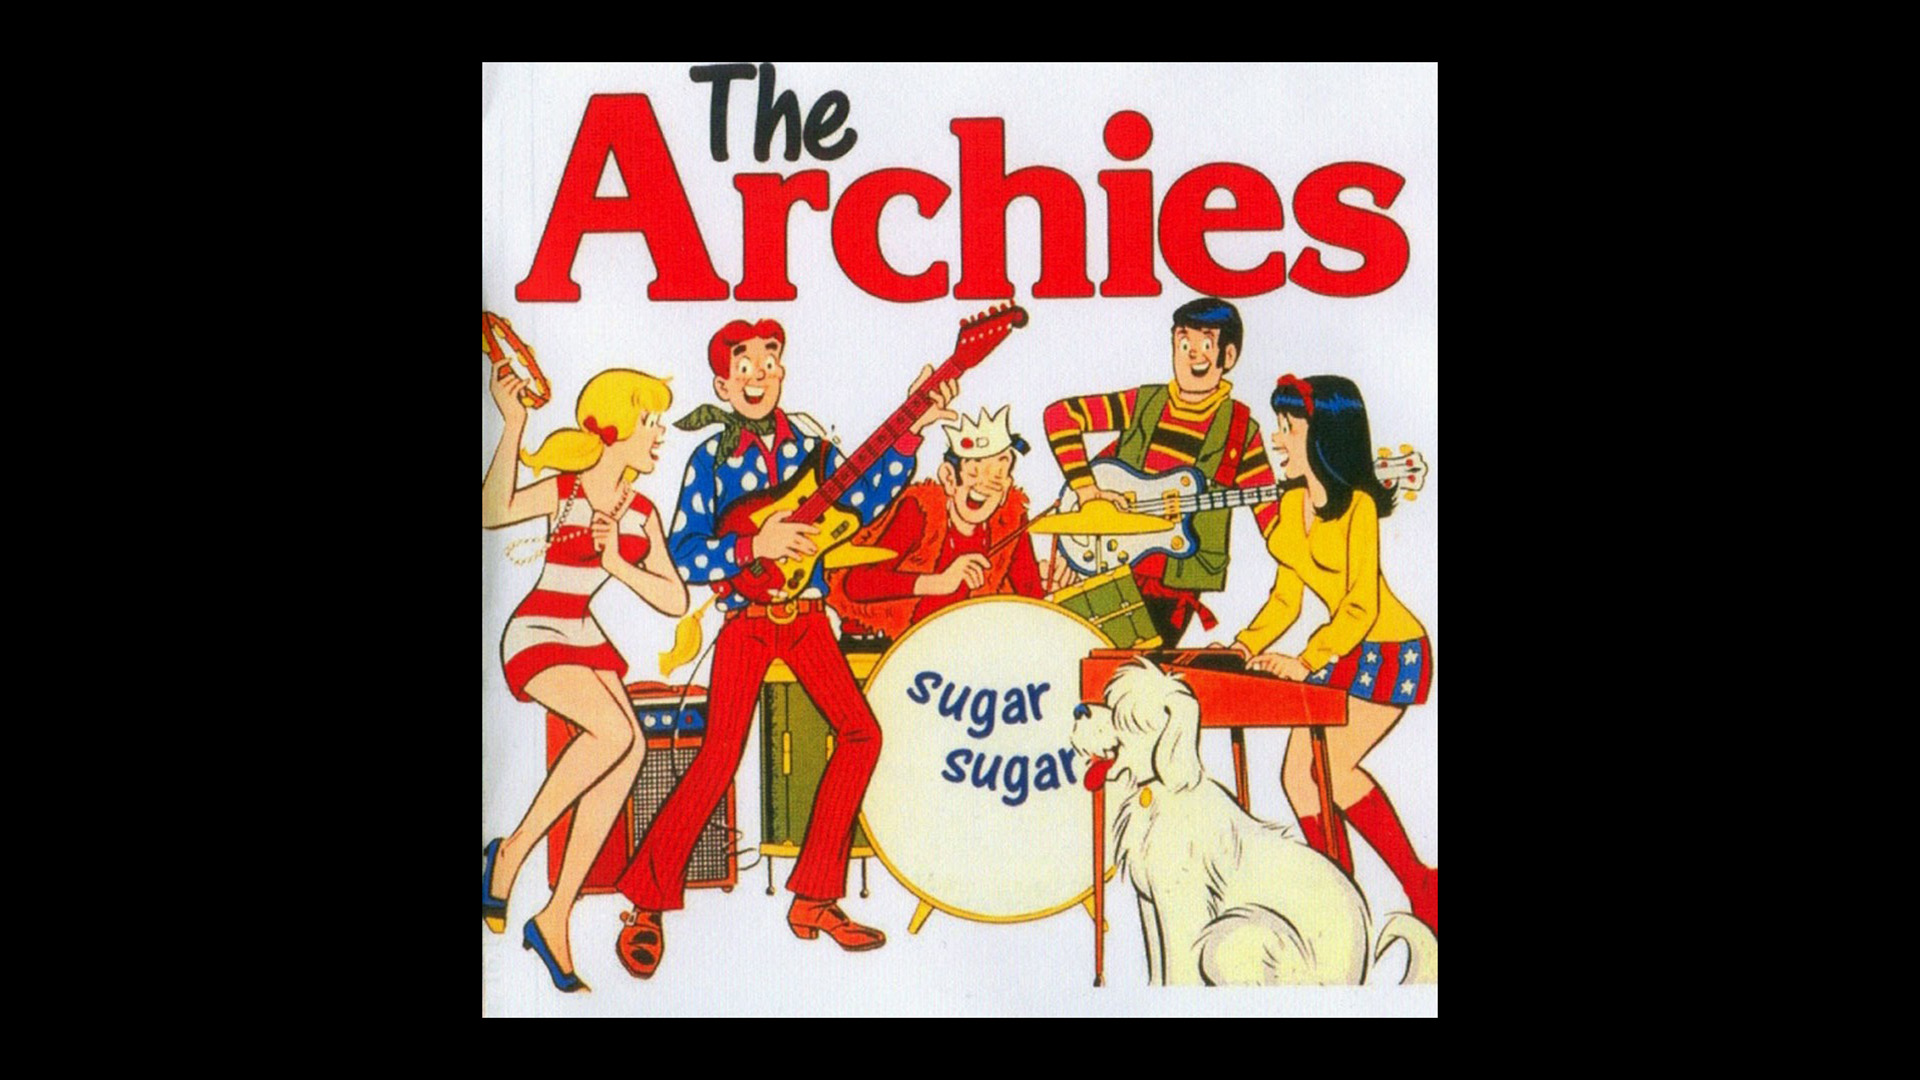 sugar sugar archies sold 6 million copies